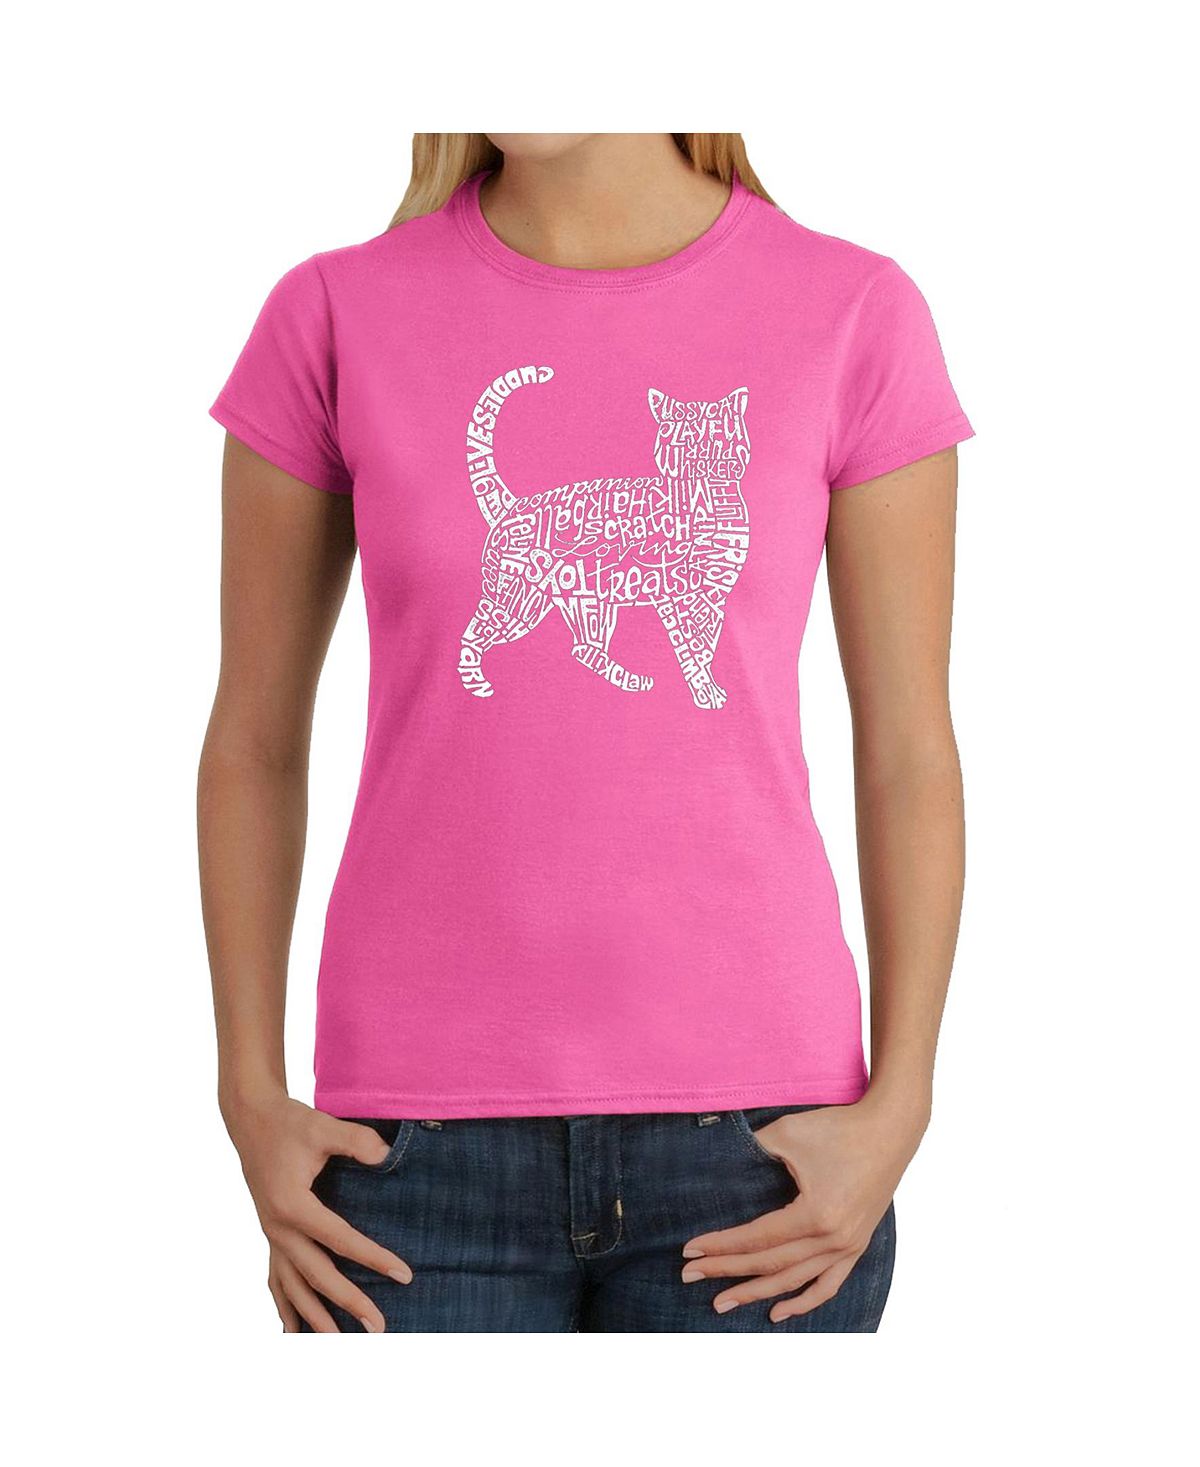 Женская футболка word art - кошка LA Pop Art, розовый фото